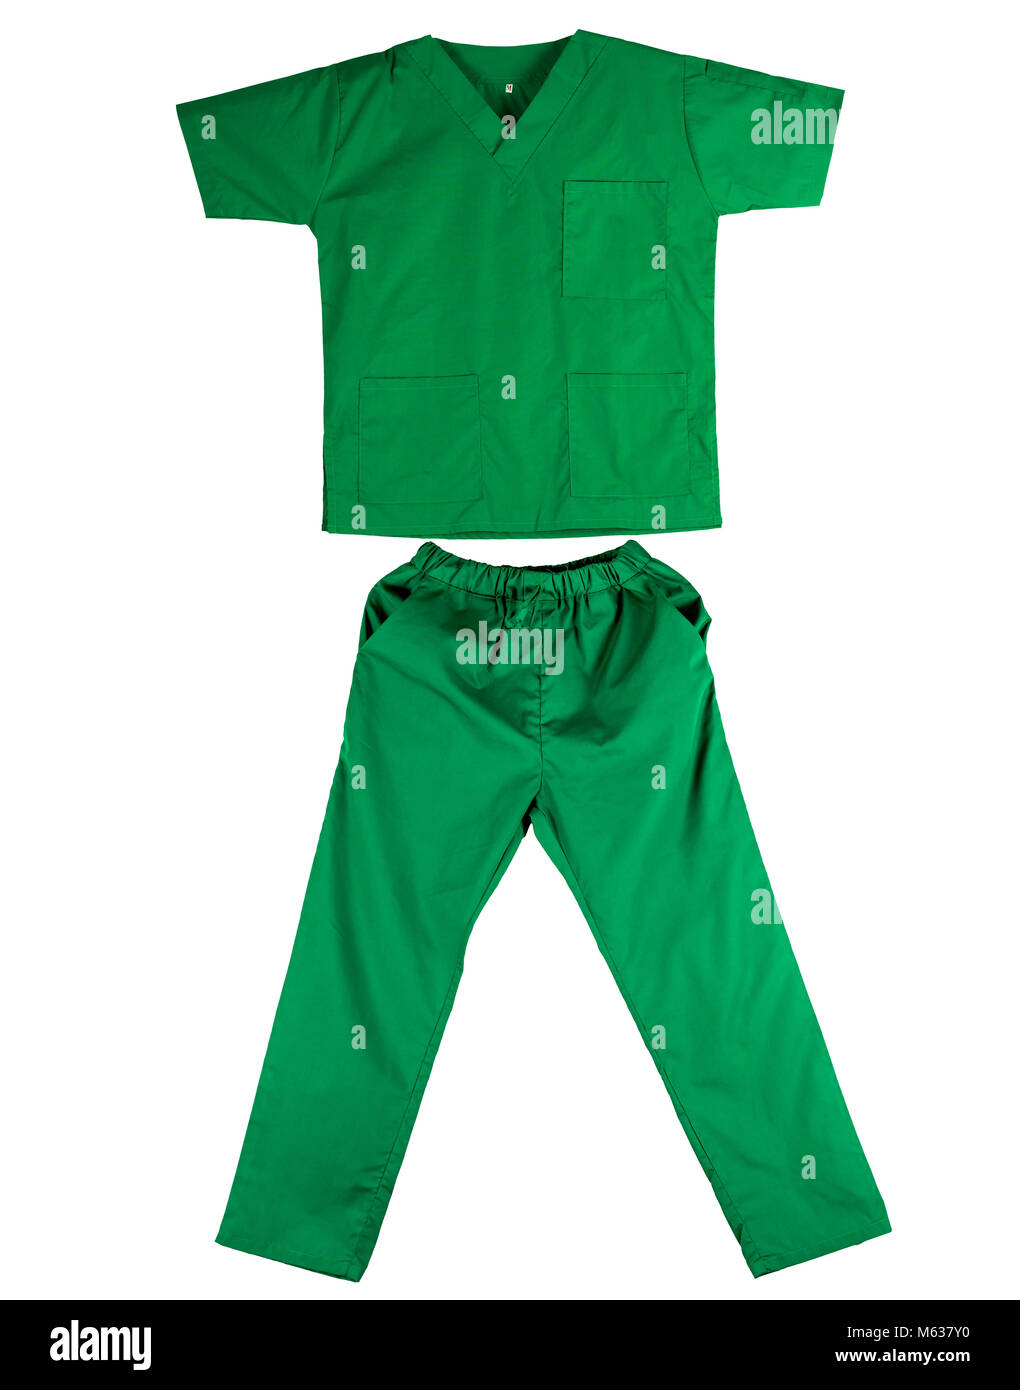 Grüne Kittel uniform auf weißem Hintergrund. Grünes T-Shirt und Hose für Tierarzt, Arzt oder Krankenschwester Stockfoto